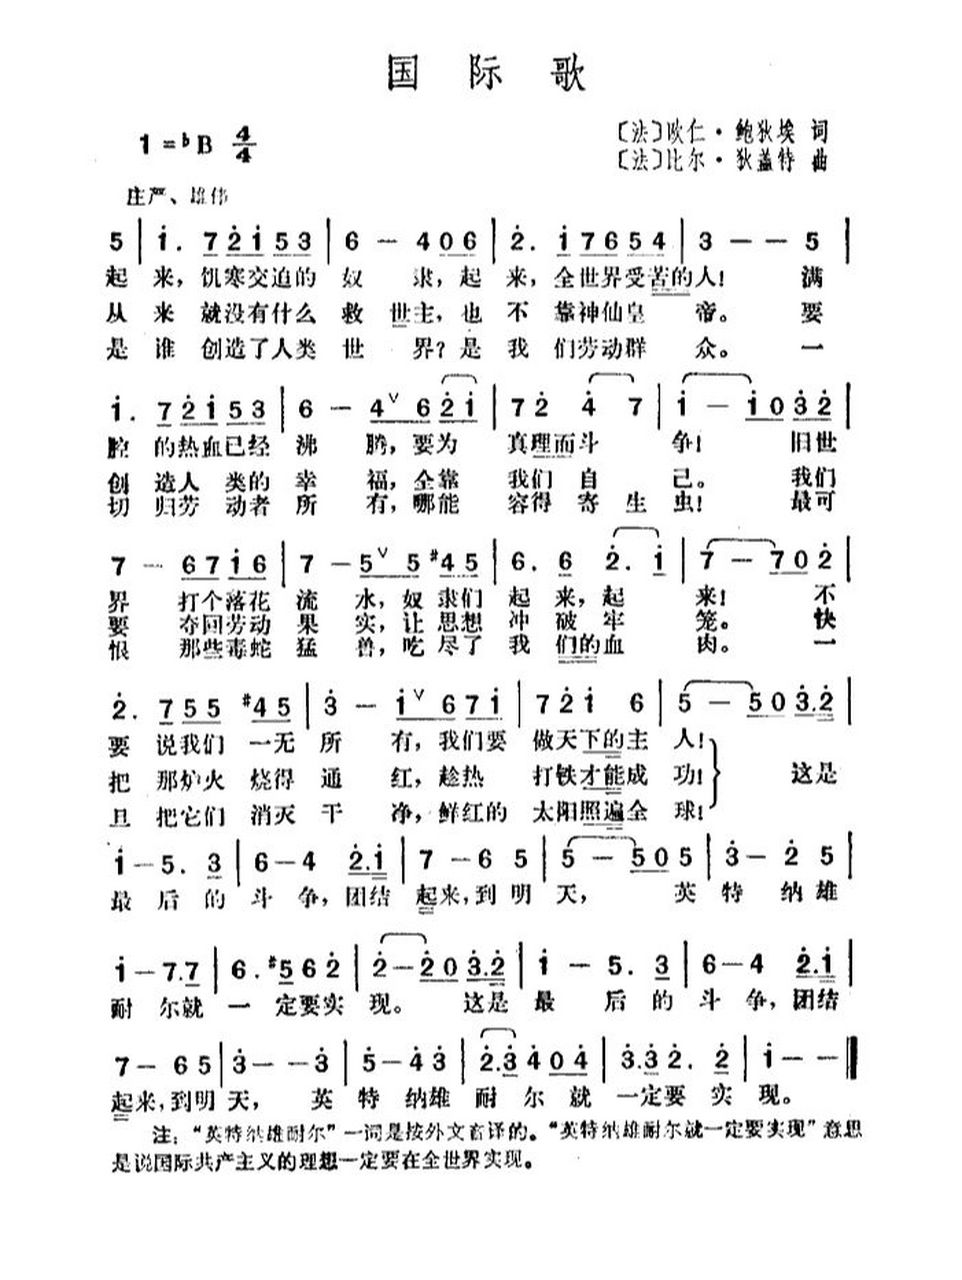 国际歌中文歌词图片